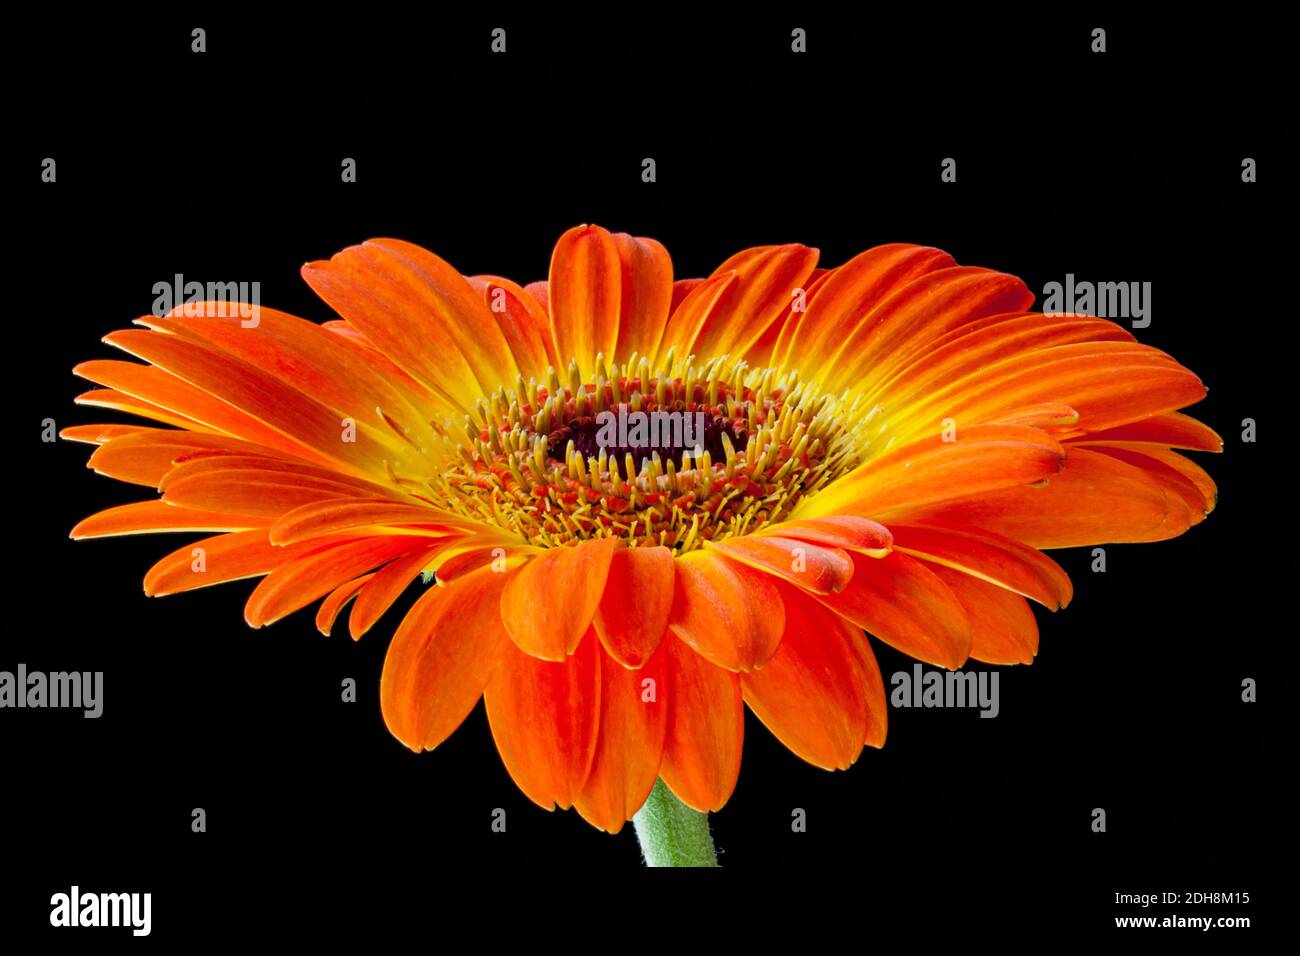 Gerbera, Asteraceae, Estudio de tiro de flor de color naranja mostrando pétalos y estambres. Foto de stock